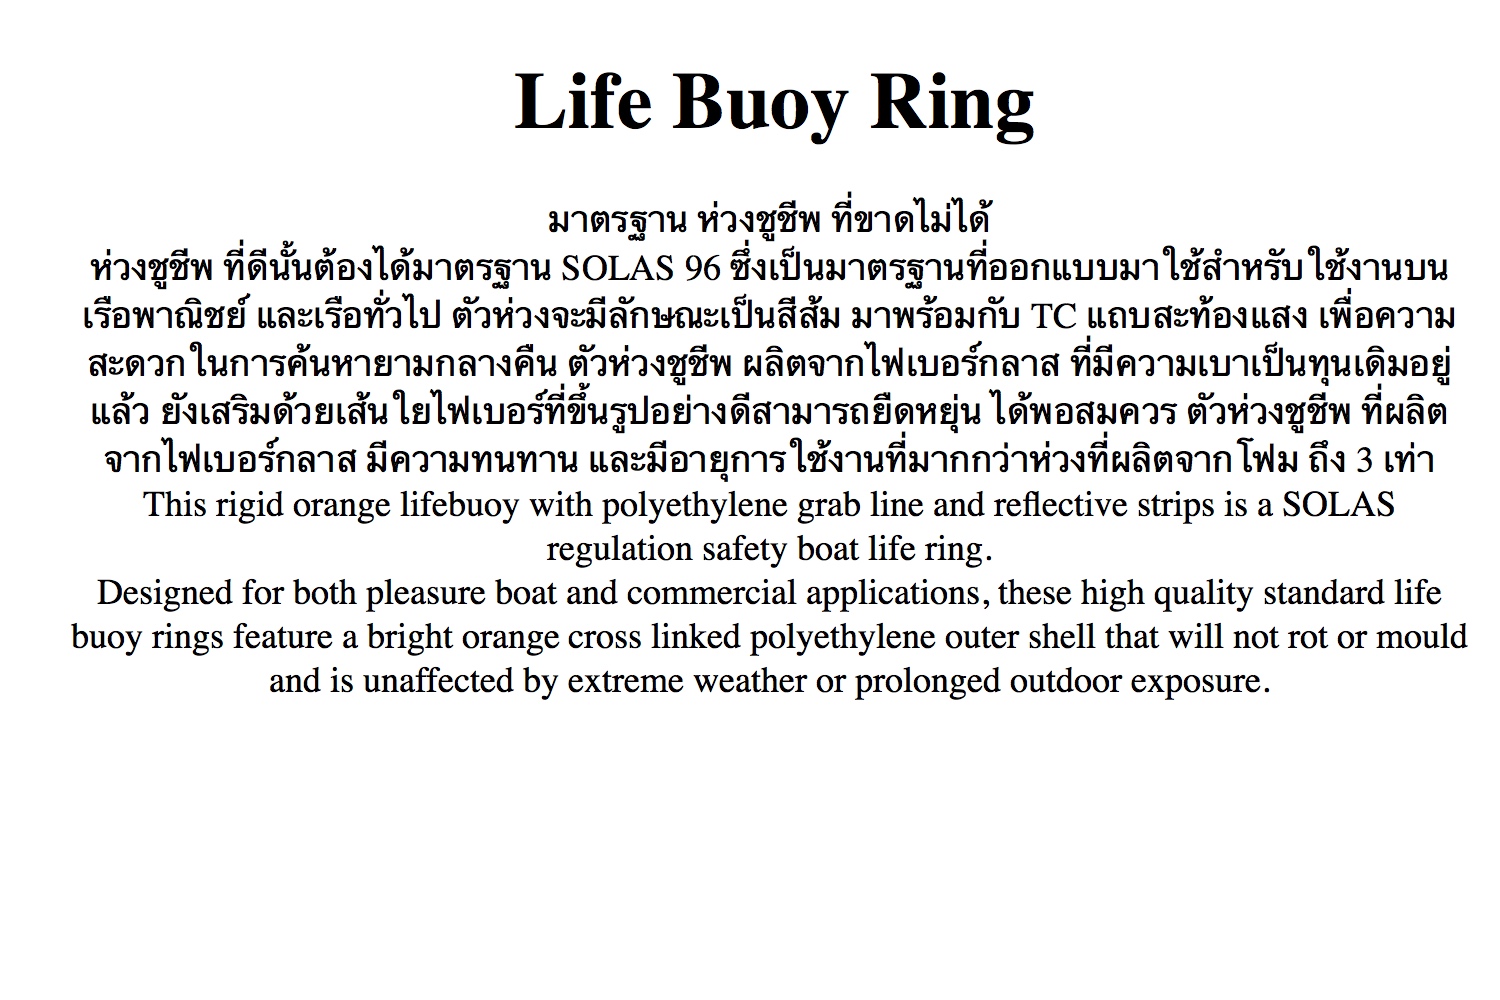 เกี่ยวกับสินค้า ห่วงชูชีพ ไฟเบอร์กราส ตามมาตรฐาน SOLAS Life Buoy Ring